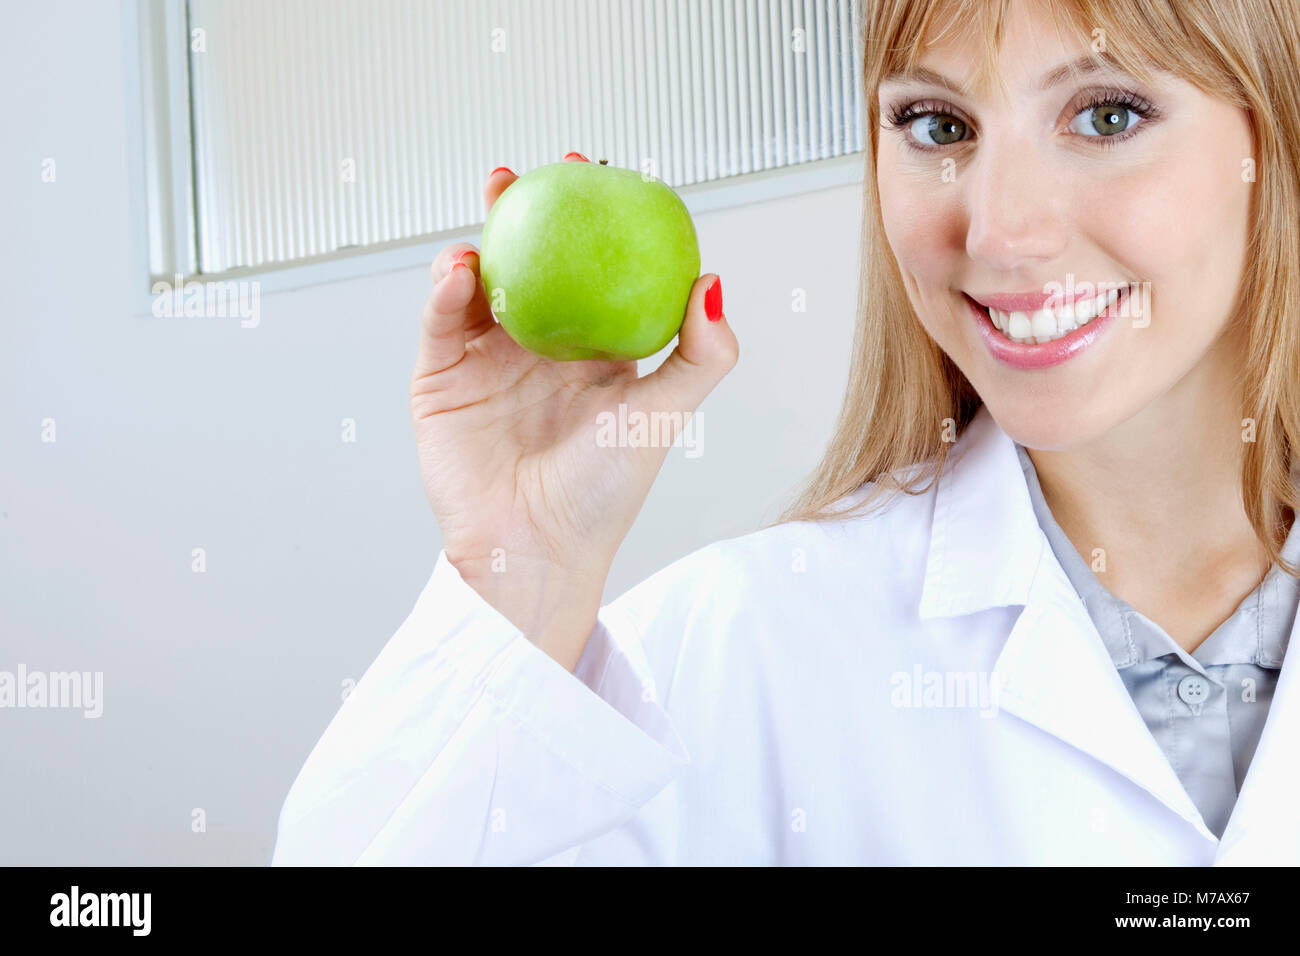 Dentista Femenino Mostrando Una Manzana Granny Smith Y Sonriente